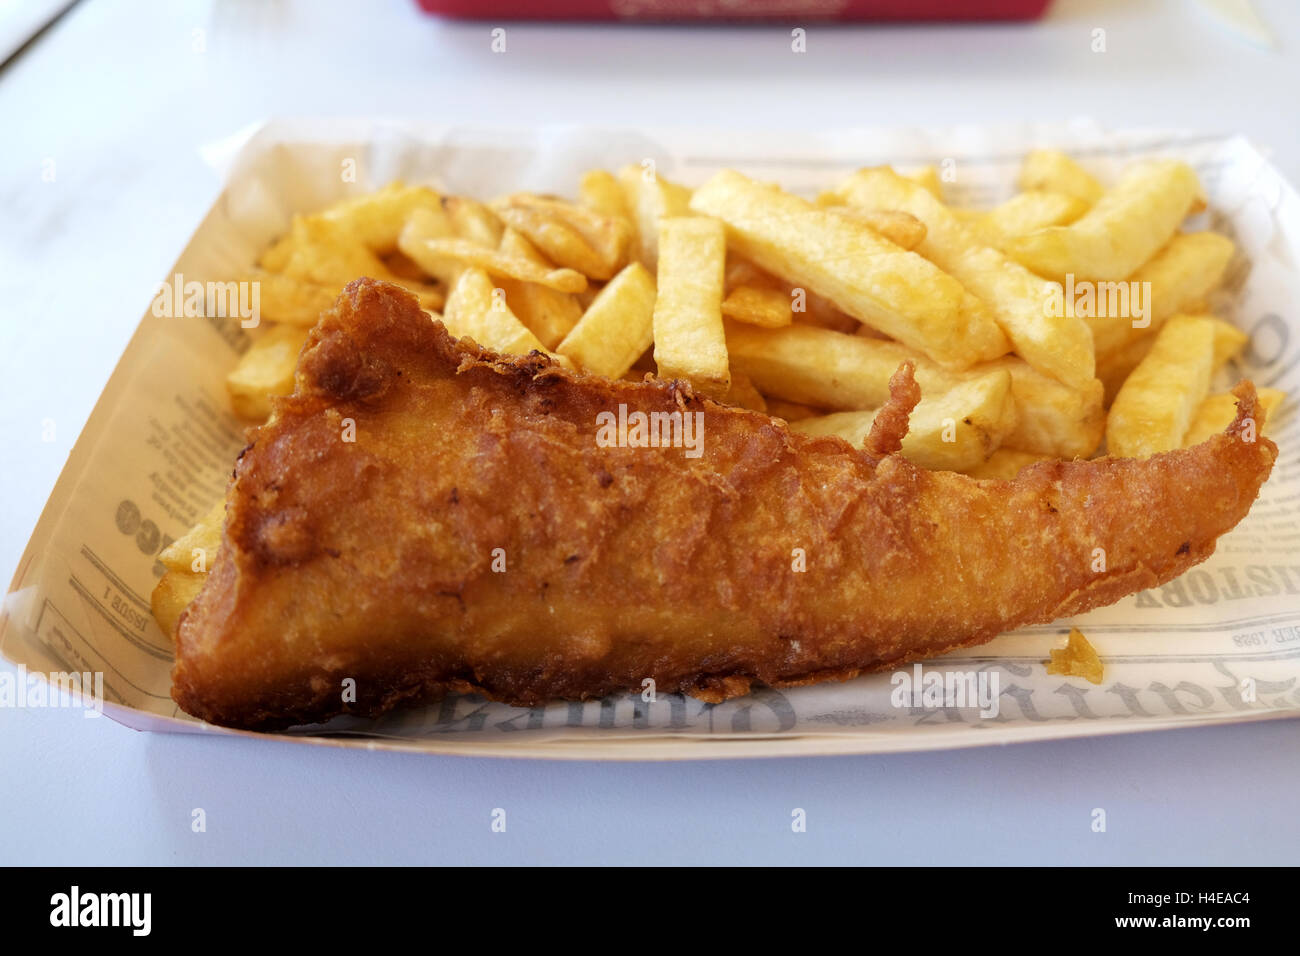 Una porción de pescado y patatas fritas recién cocinados desde un Harry Ramsden fish and chips shop Foto de stock